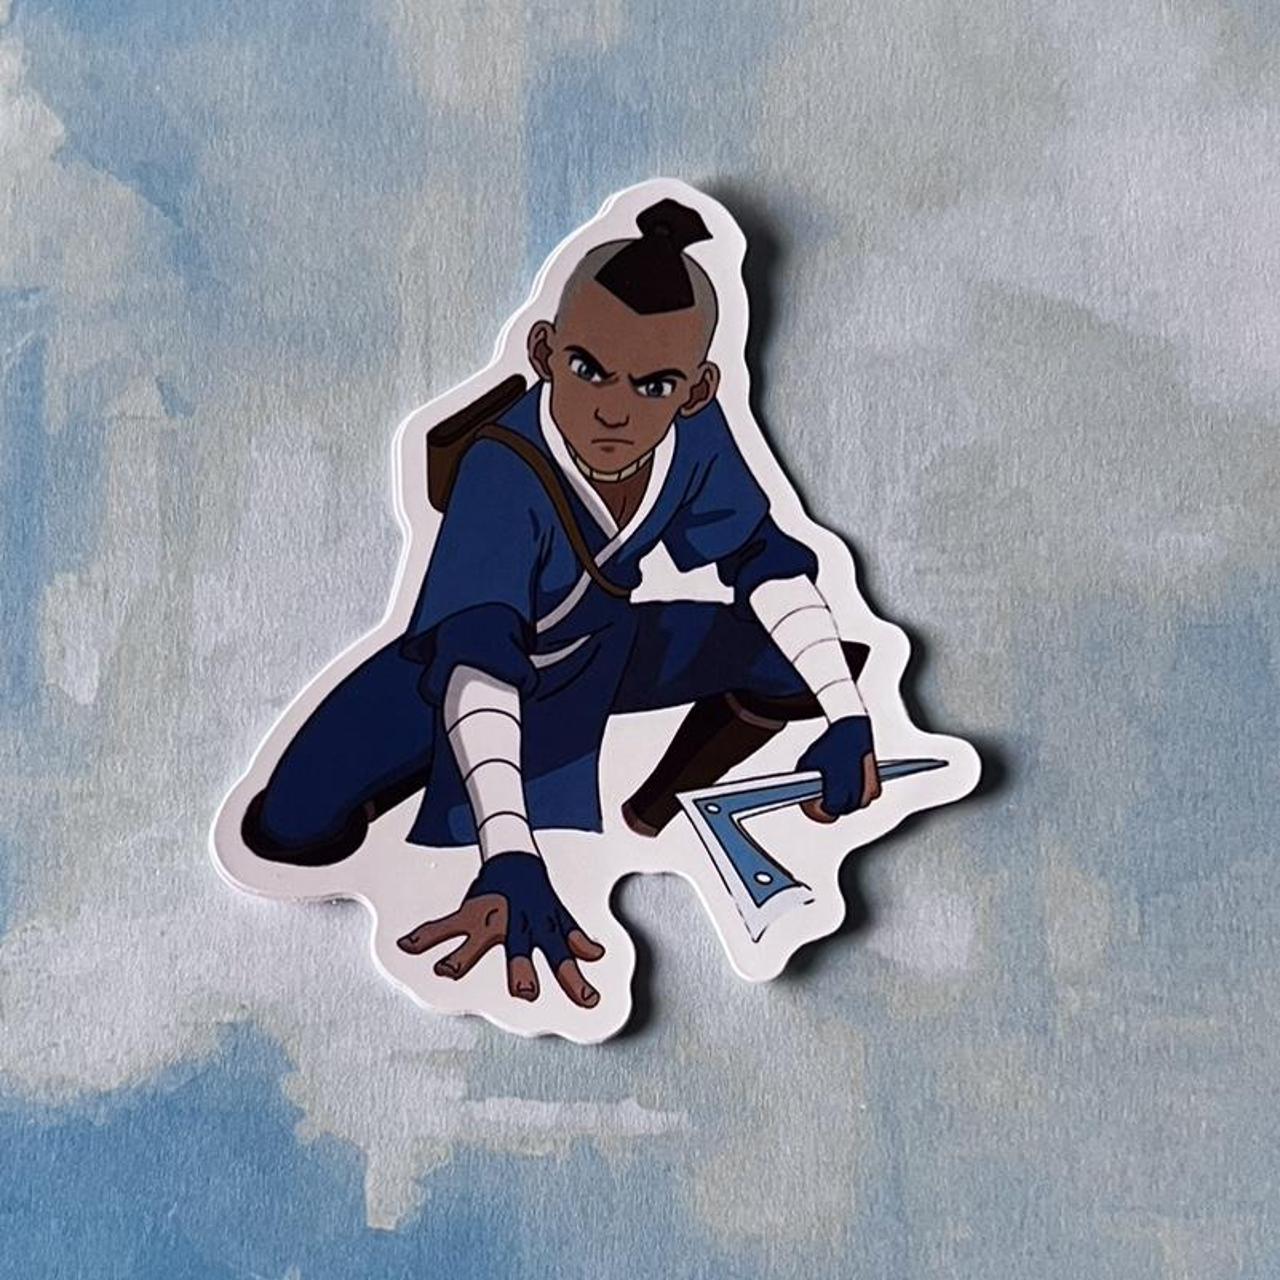 Avatar the Last Airbender sticker! 🔵🟤🔴⚪️ #matte - Depop